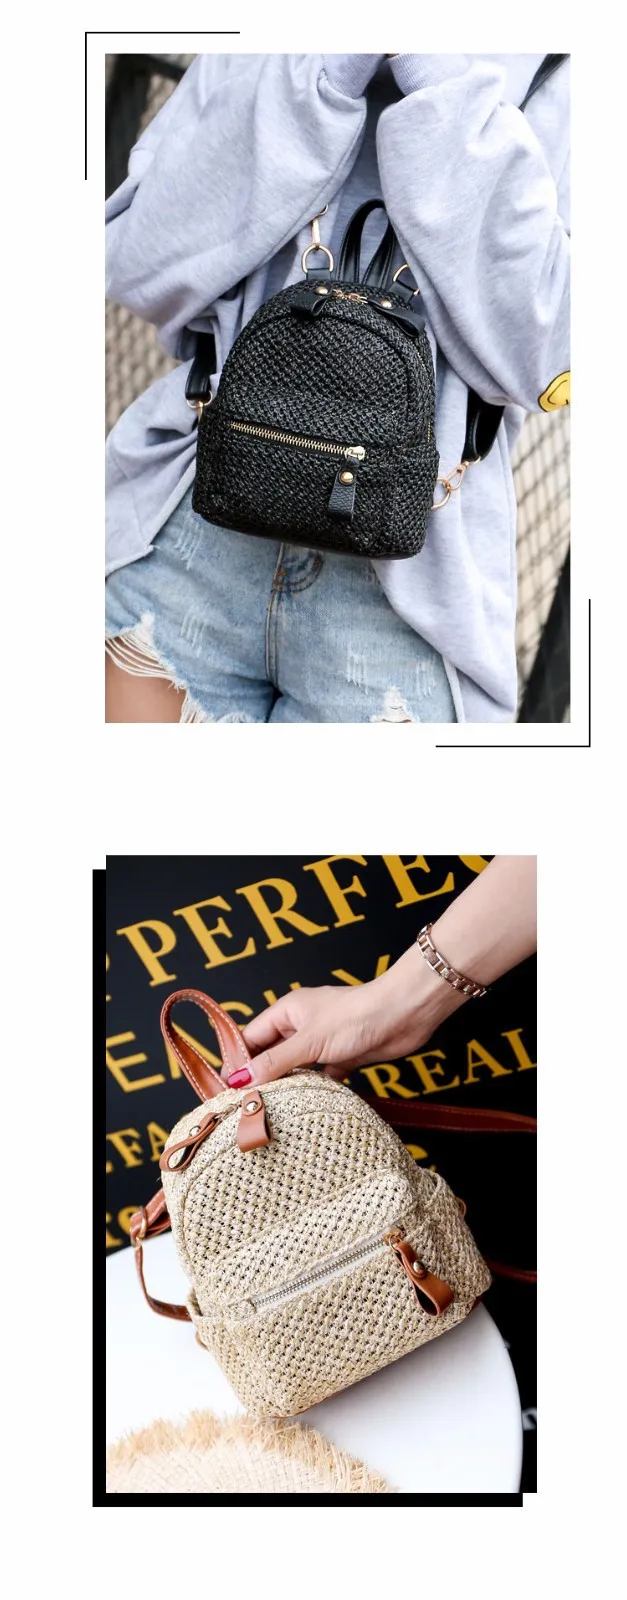 Соломенная Сумка 2019 Летняя мода новый стиль плетеная из растительного сырья рюкзак хипстер выдалбливают Рюкзак Универсальный женская